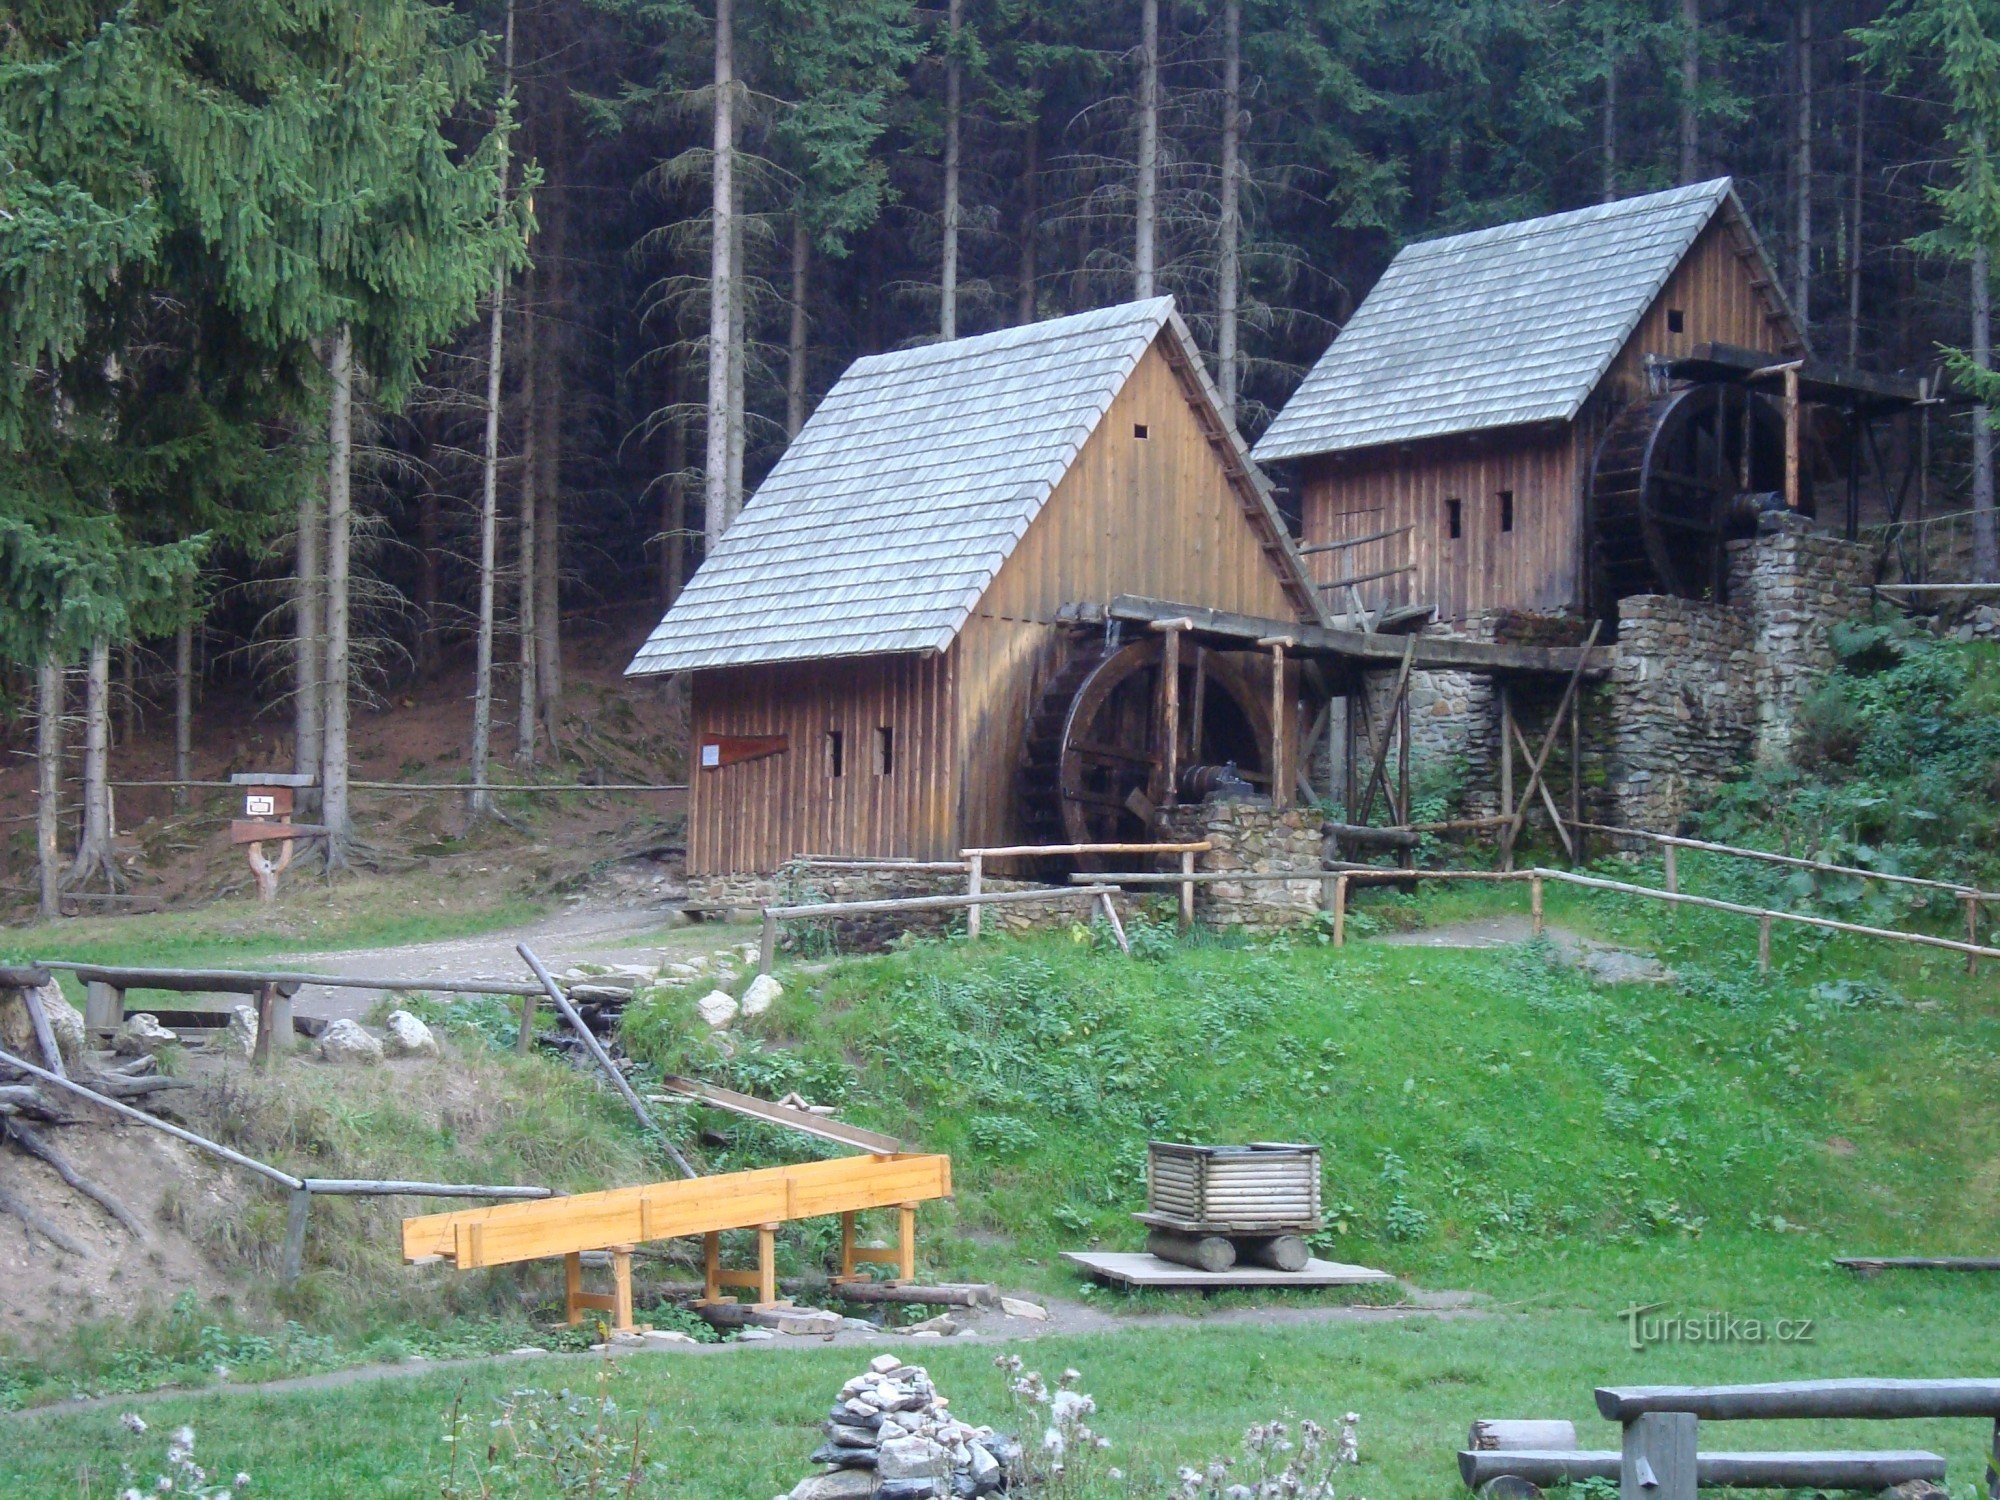 Kaivos ulkoilmamuseo lähellä Kultaisia ​​vuoria - kultamalmipuiset vesimyllyt - Kuva: Ulrych Mir.